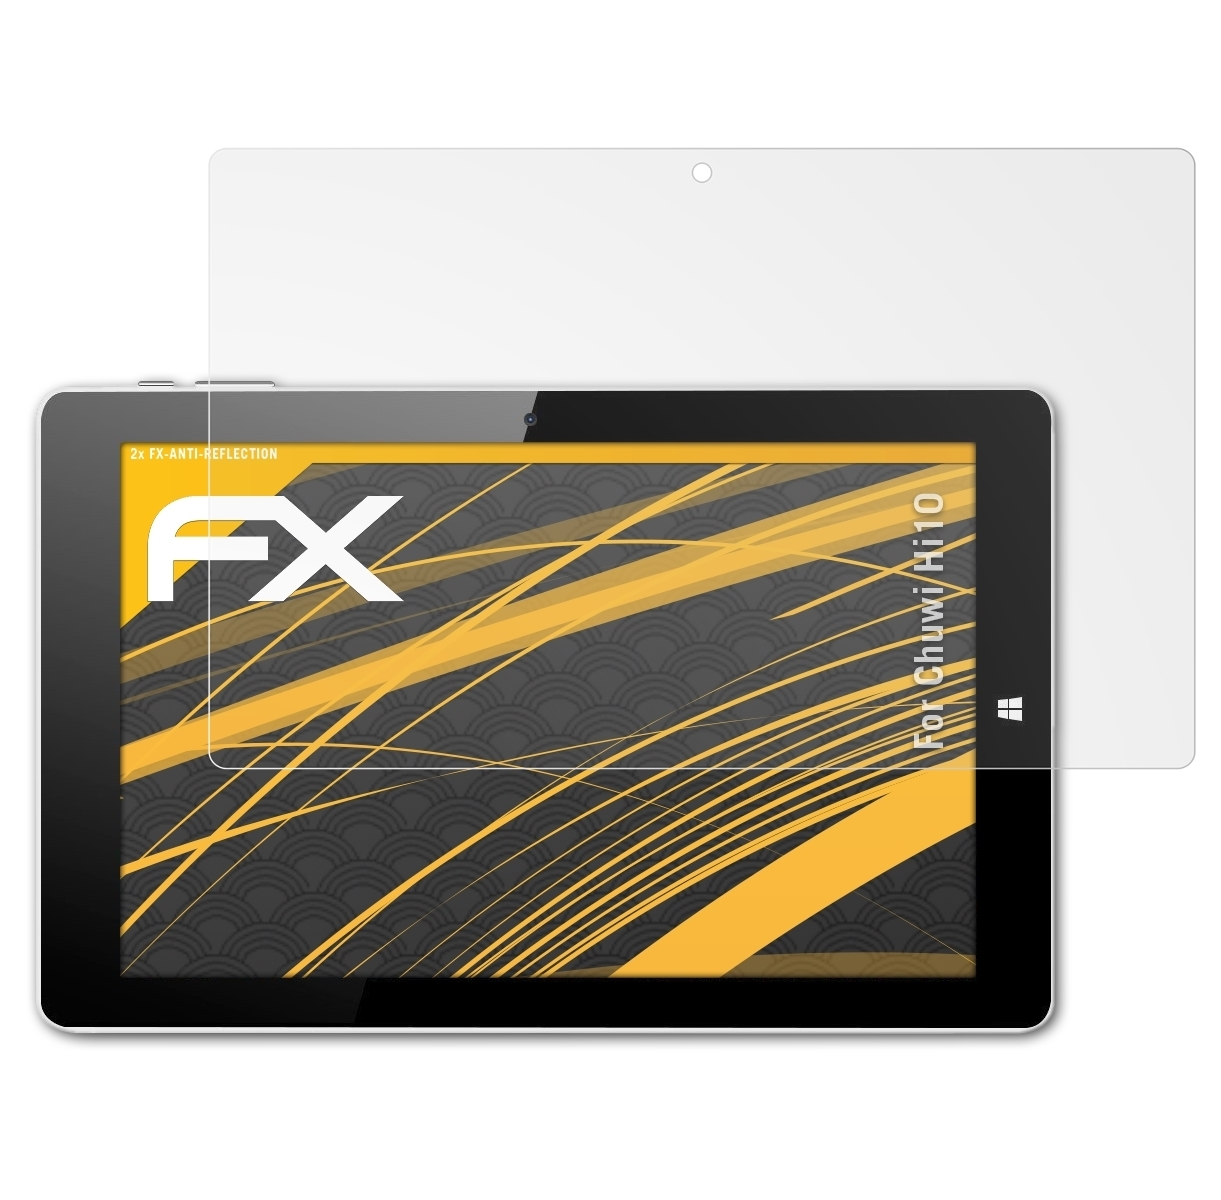 Chuwi 2x FX-Antireflex ATFOLIX Displayschutz(für Hi10)